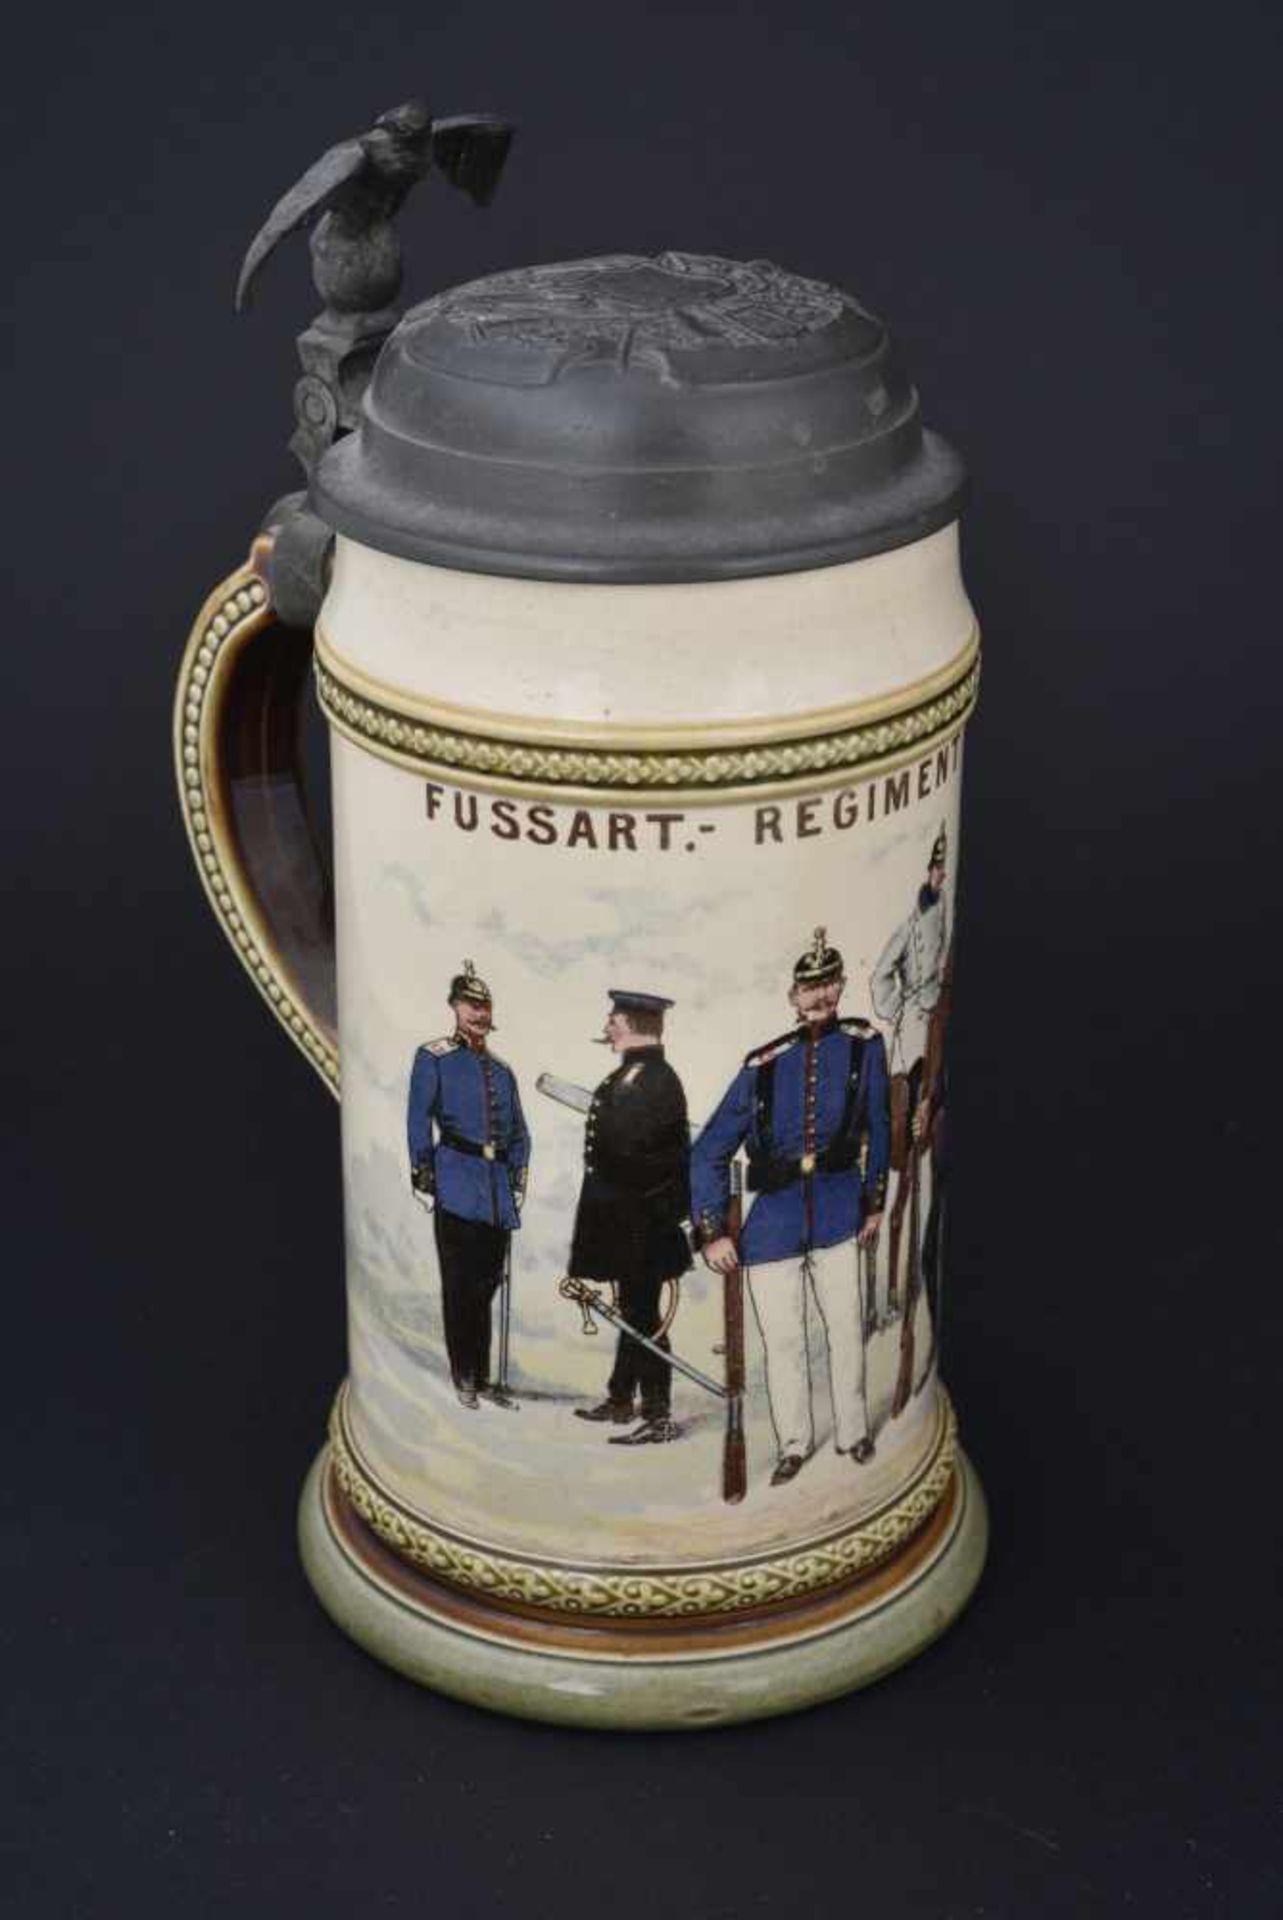 Chope du Fussart Regiment Nr 15 En mettlach d'1/2 litre. Couvercle décoré. Marquages au fond 2140 94 - Bild 2 aus 4